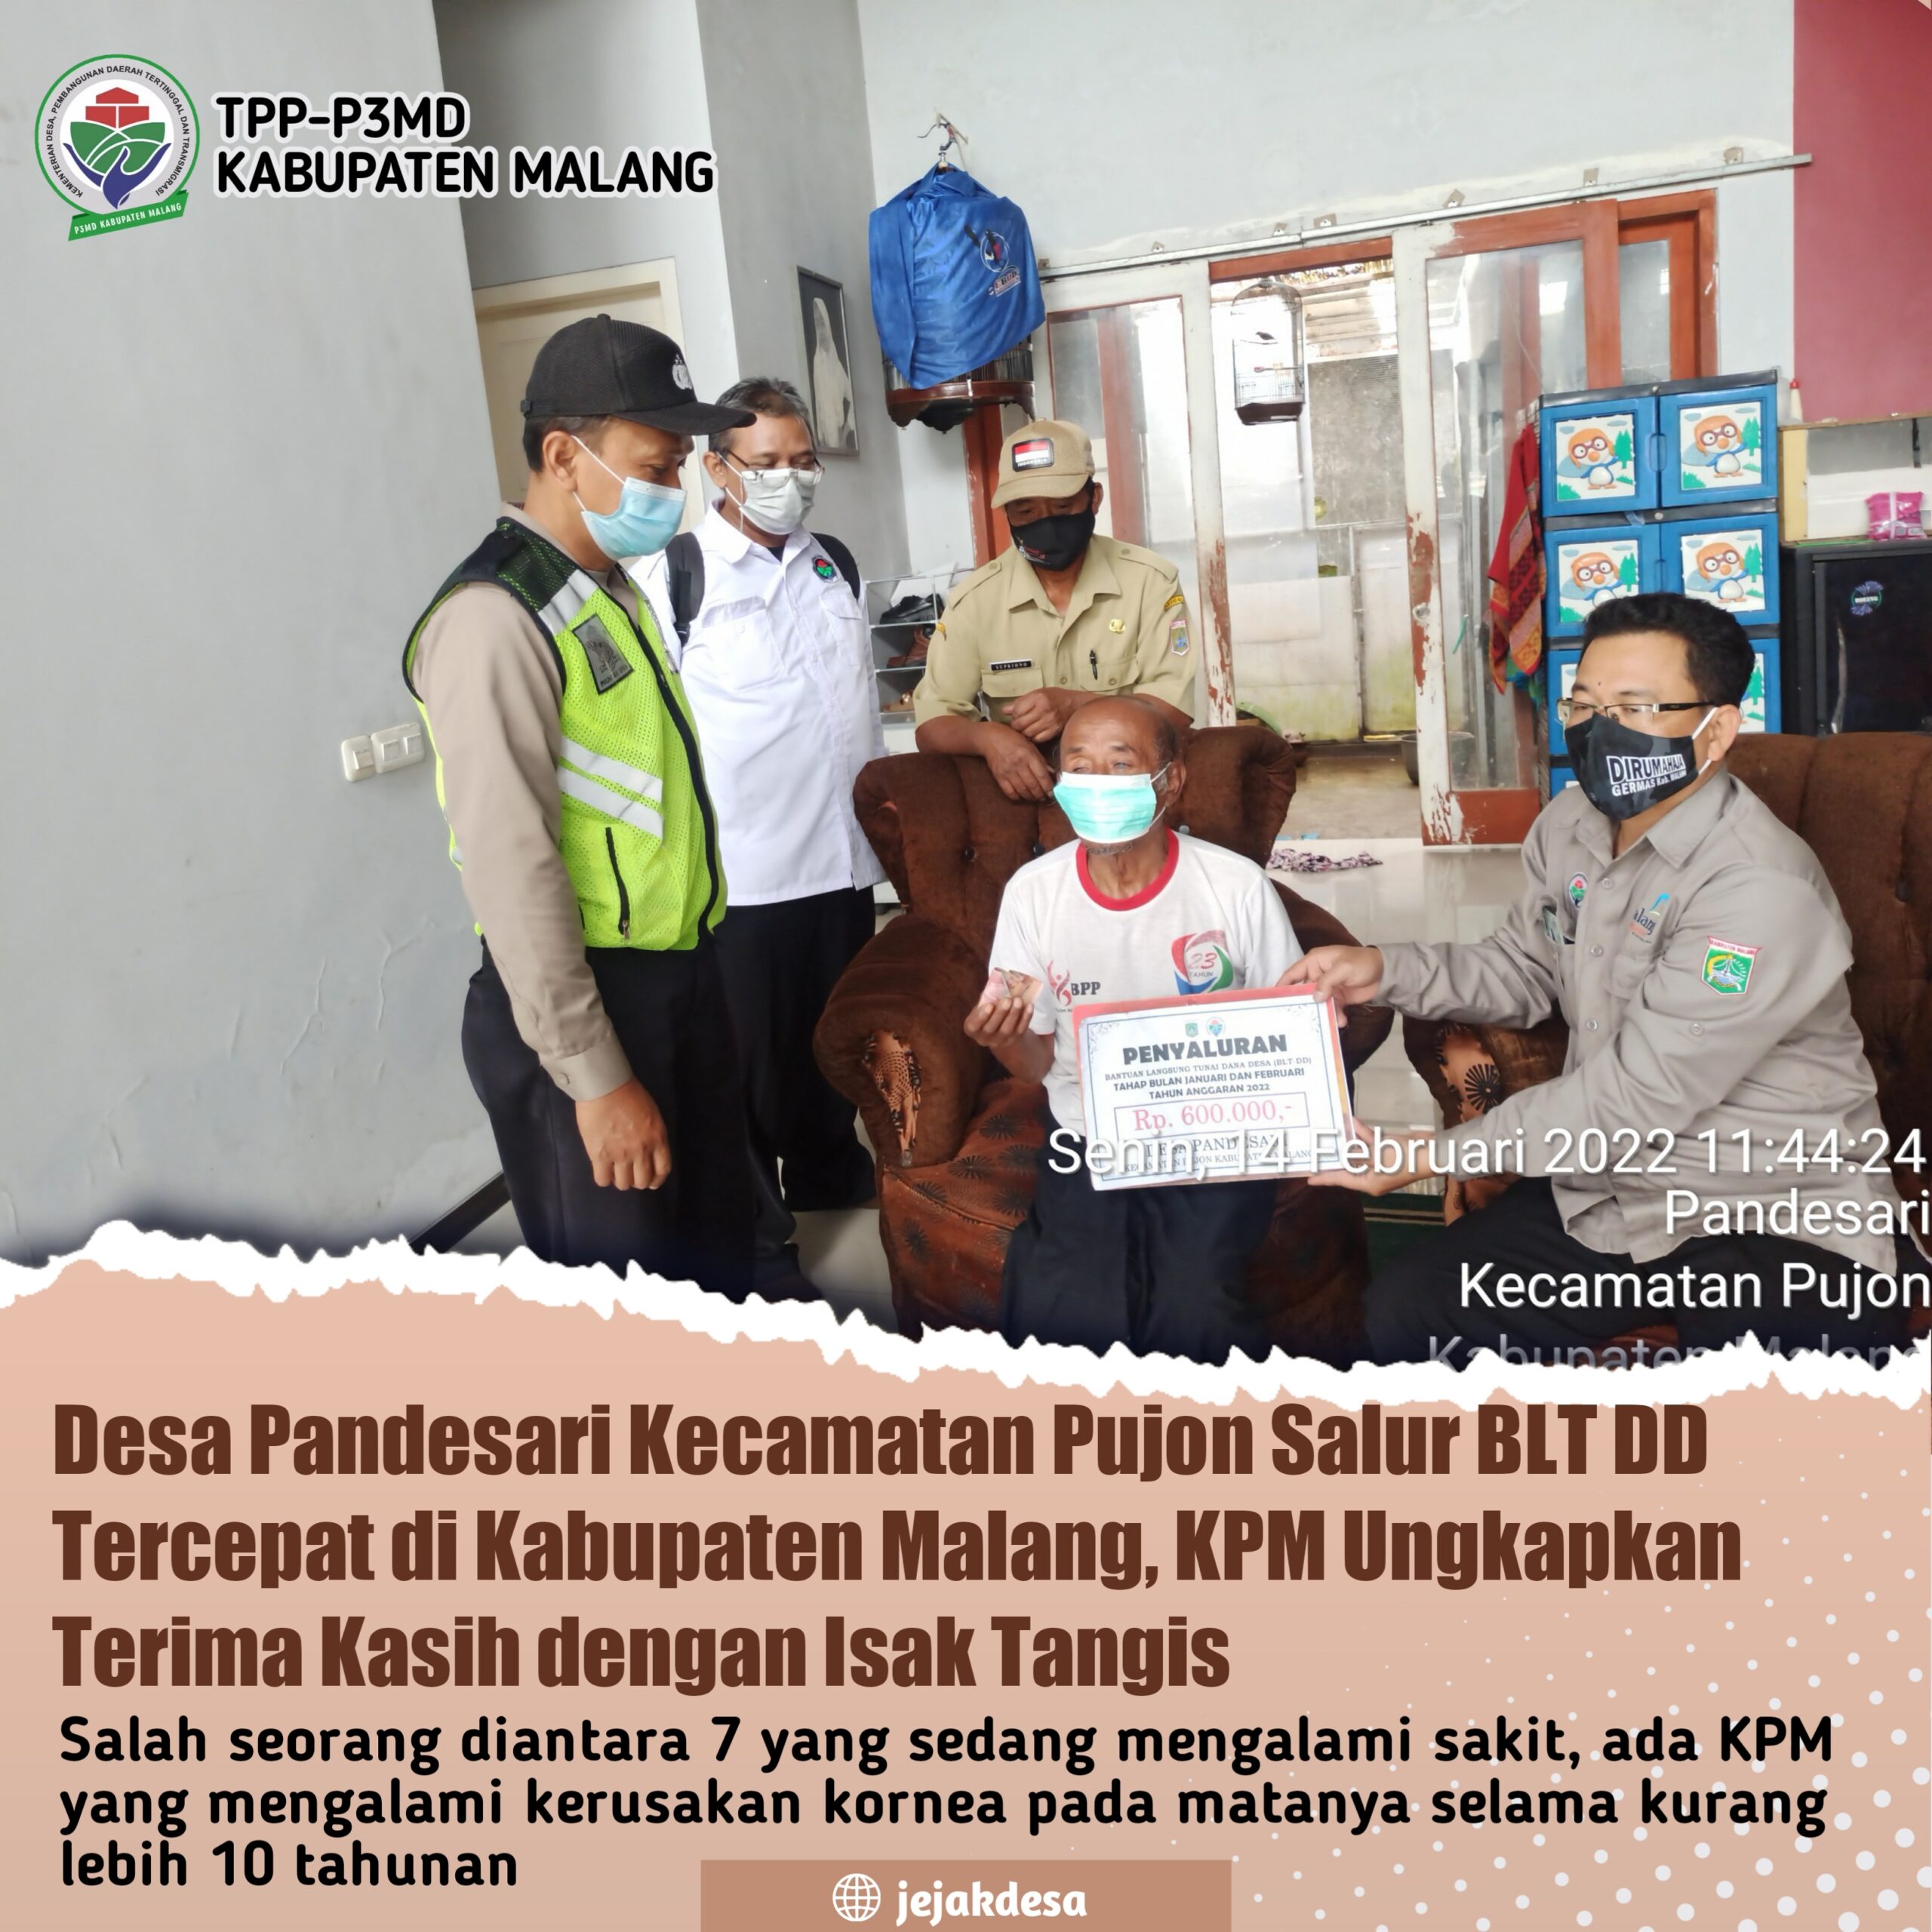 Desa Pandesari Kecamatan Pujon Salur BLT DD Tercepat di Kabupaten Malang, KPM Ungkapkan Terima Kasih dengan Isak Tangis